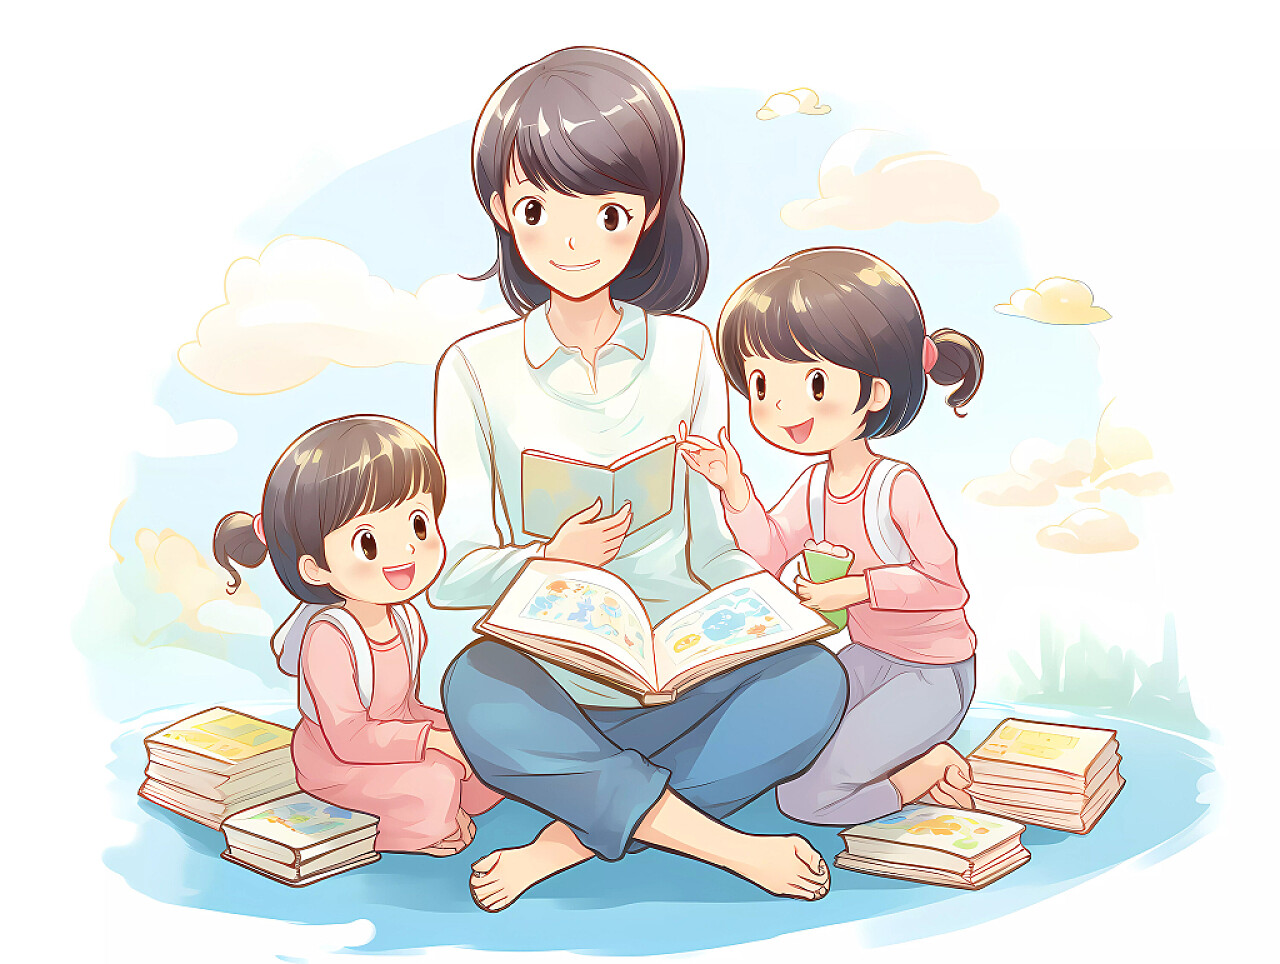 教育培训暑假招生读书日妈妈带孩子亲子快乐阅读场景